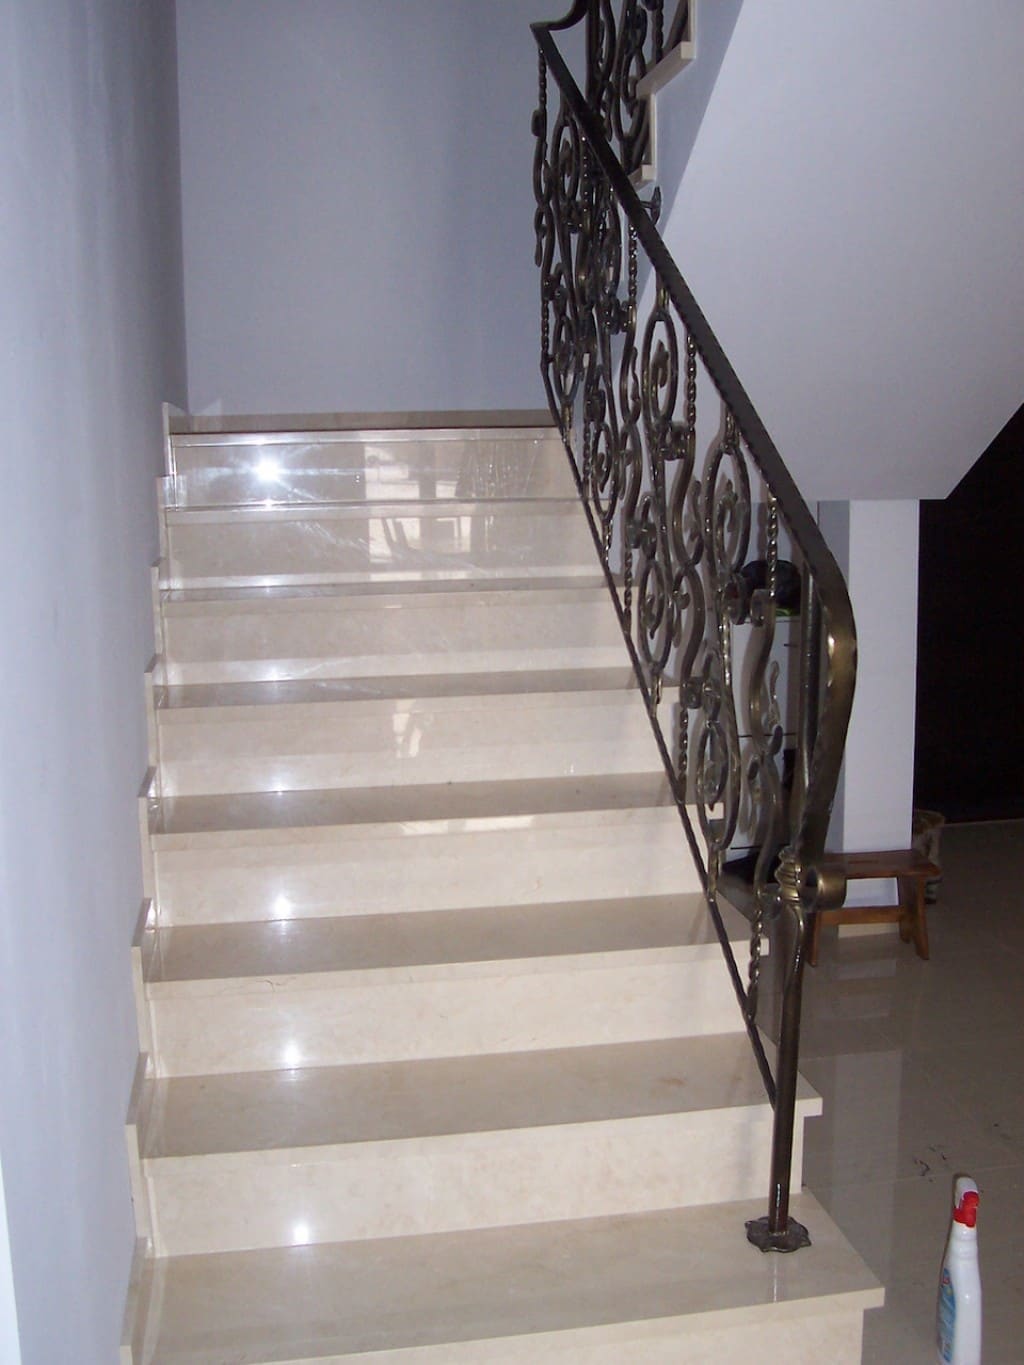 Blog - Marble or granite stairs?